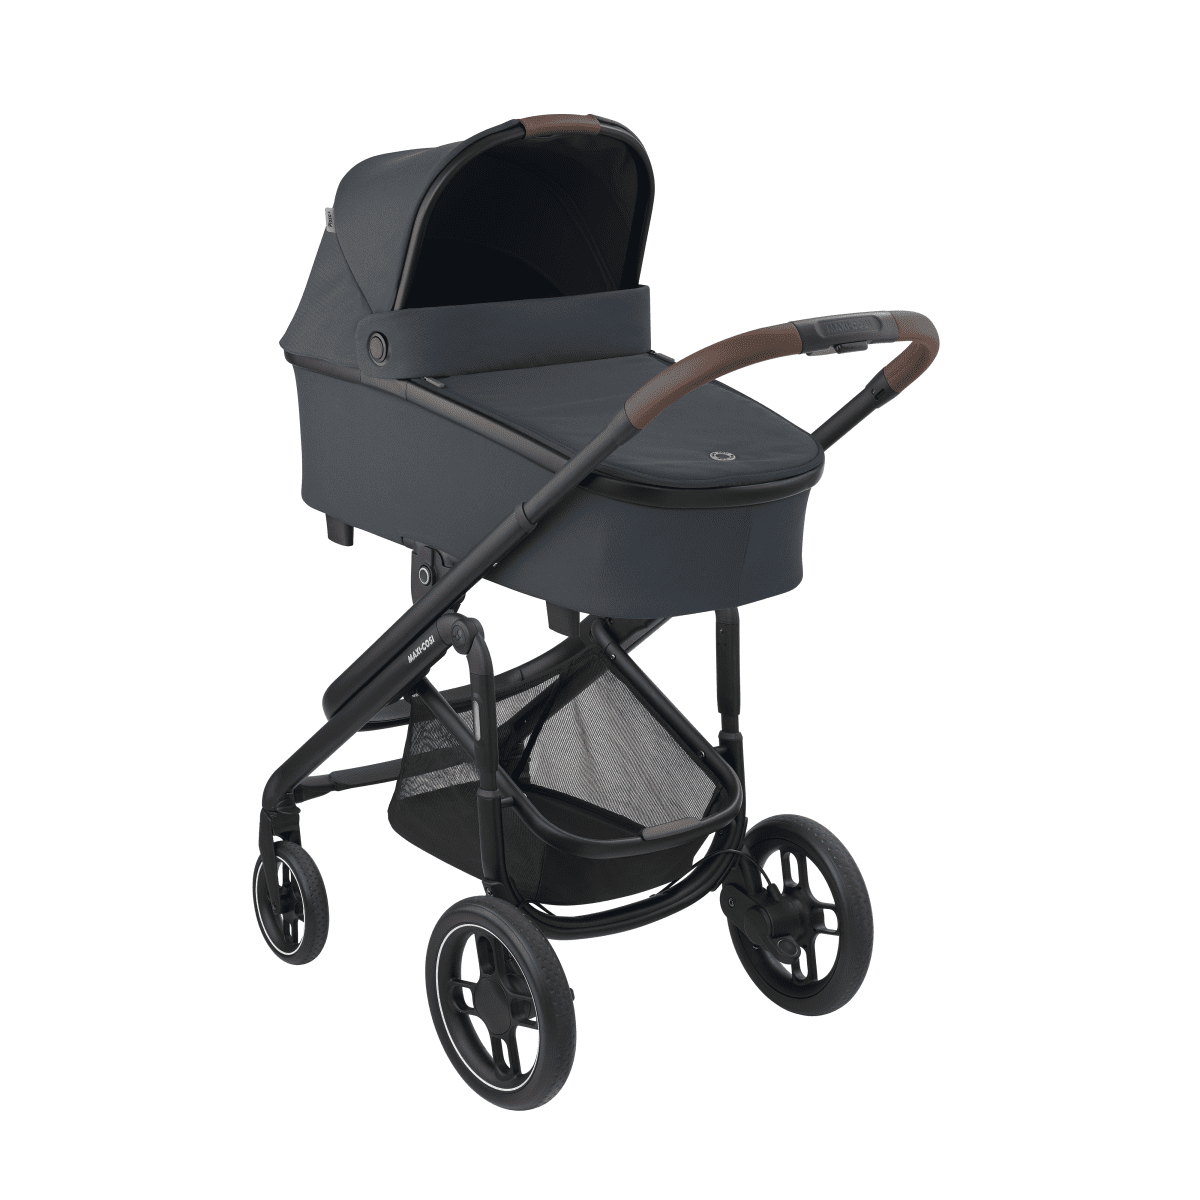 Ontvanger Anemoon vis veeg Maxi-Cosi Plaza+ Kinderwagen online kopen - Baby Plus - Babywinkel